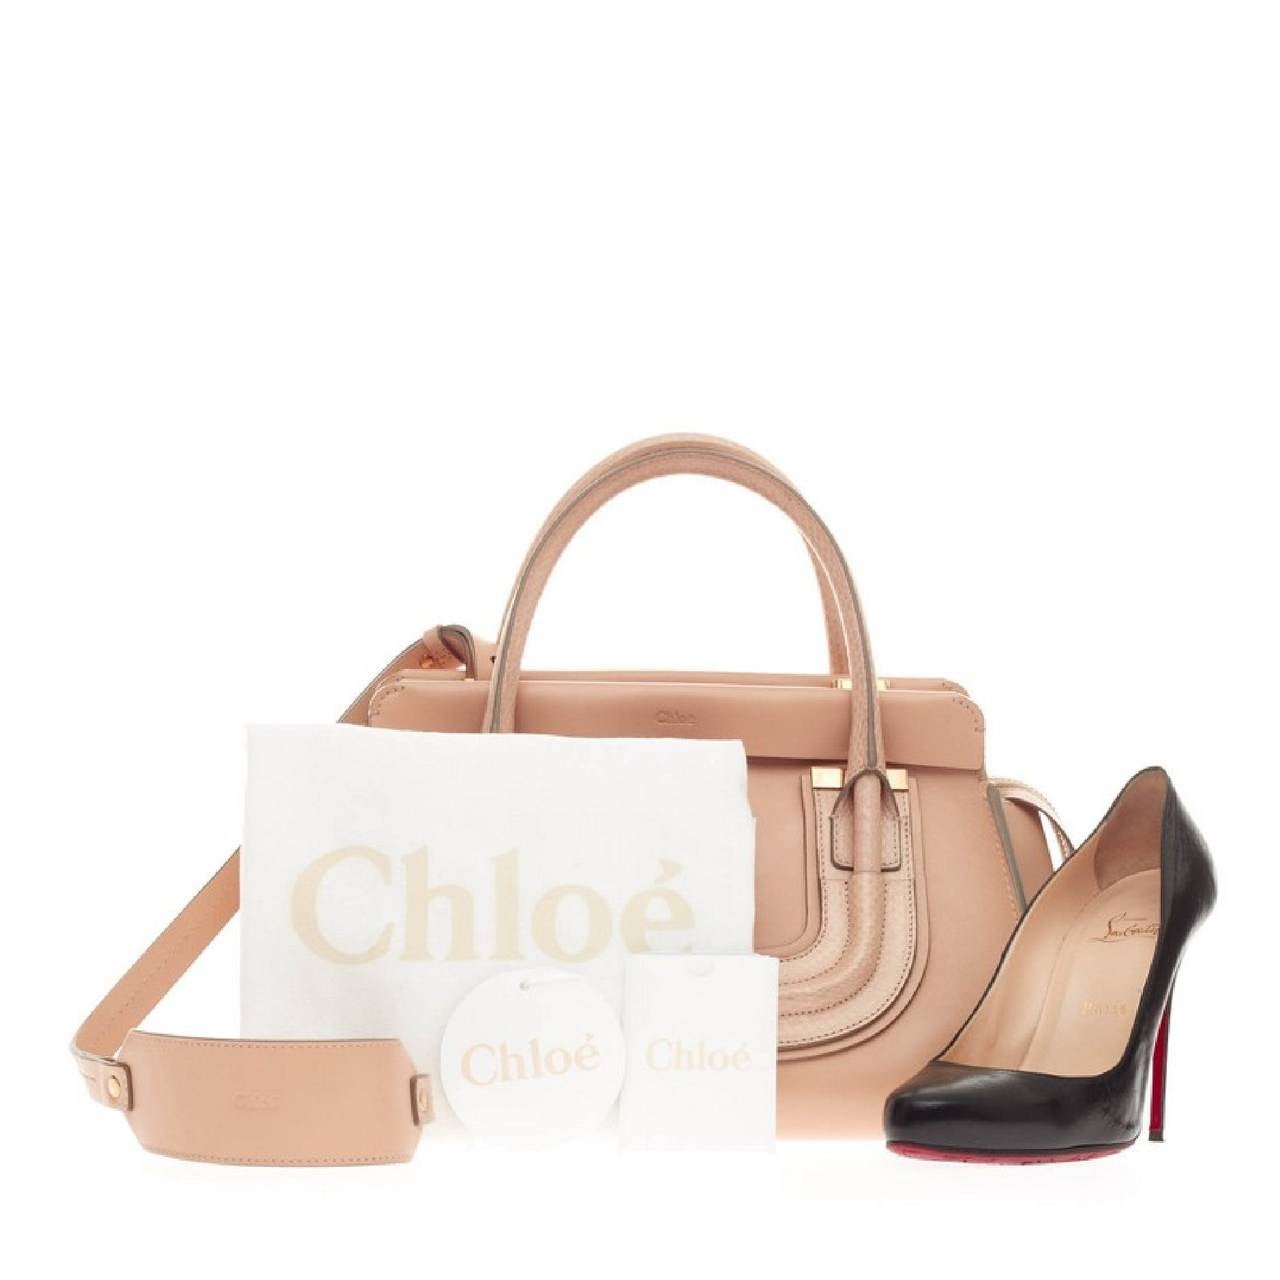 Cet authentique sac à main Chloe Everston en cuir moyen est fidèle à l'esthétique de la marque avec son design sophistiqué et chic:: parfait pour les looks de tous les jours. Confectionné en cuir grainé blush nude avec des détails en peau de serpent